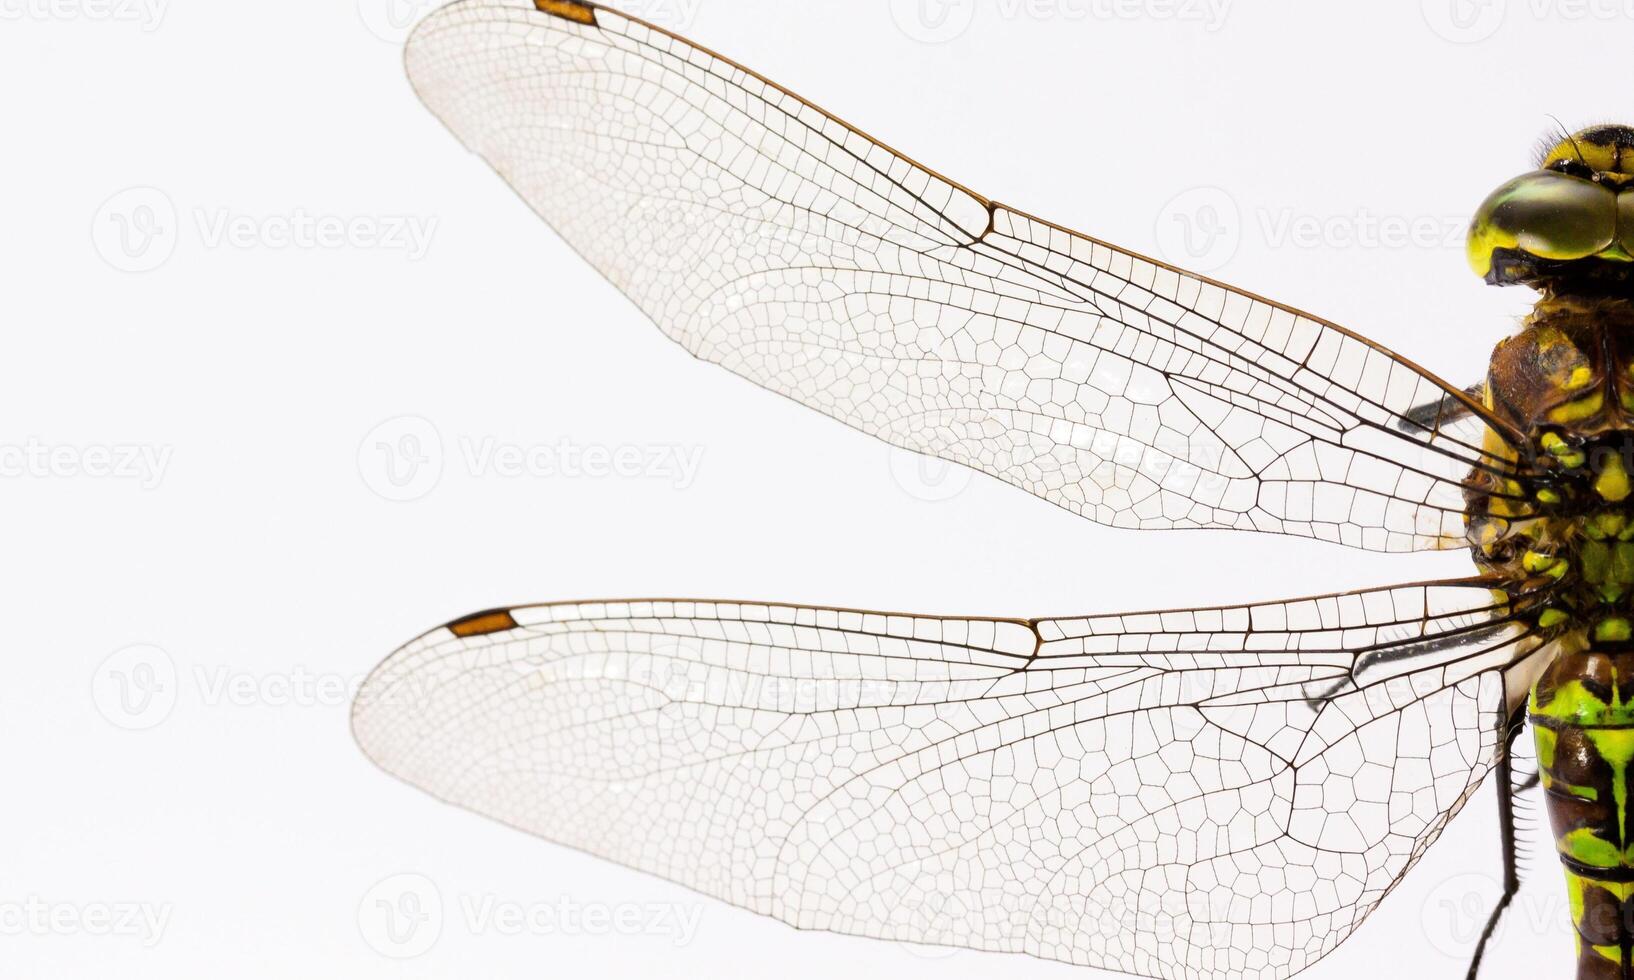 molto dettagliato macro foto di un' libellula. macro sparo, mostrando dettagli di il quello della libellula occhi e Ali. bellissimo libellula nel naturale habitat